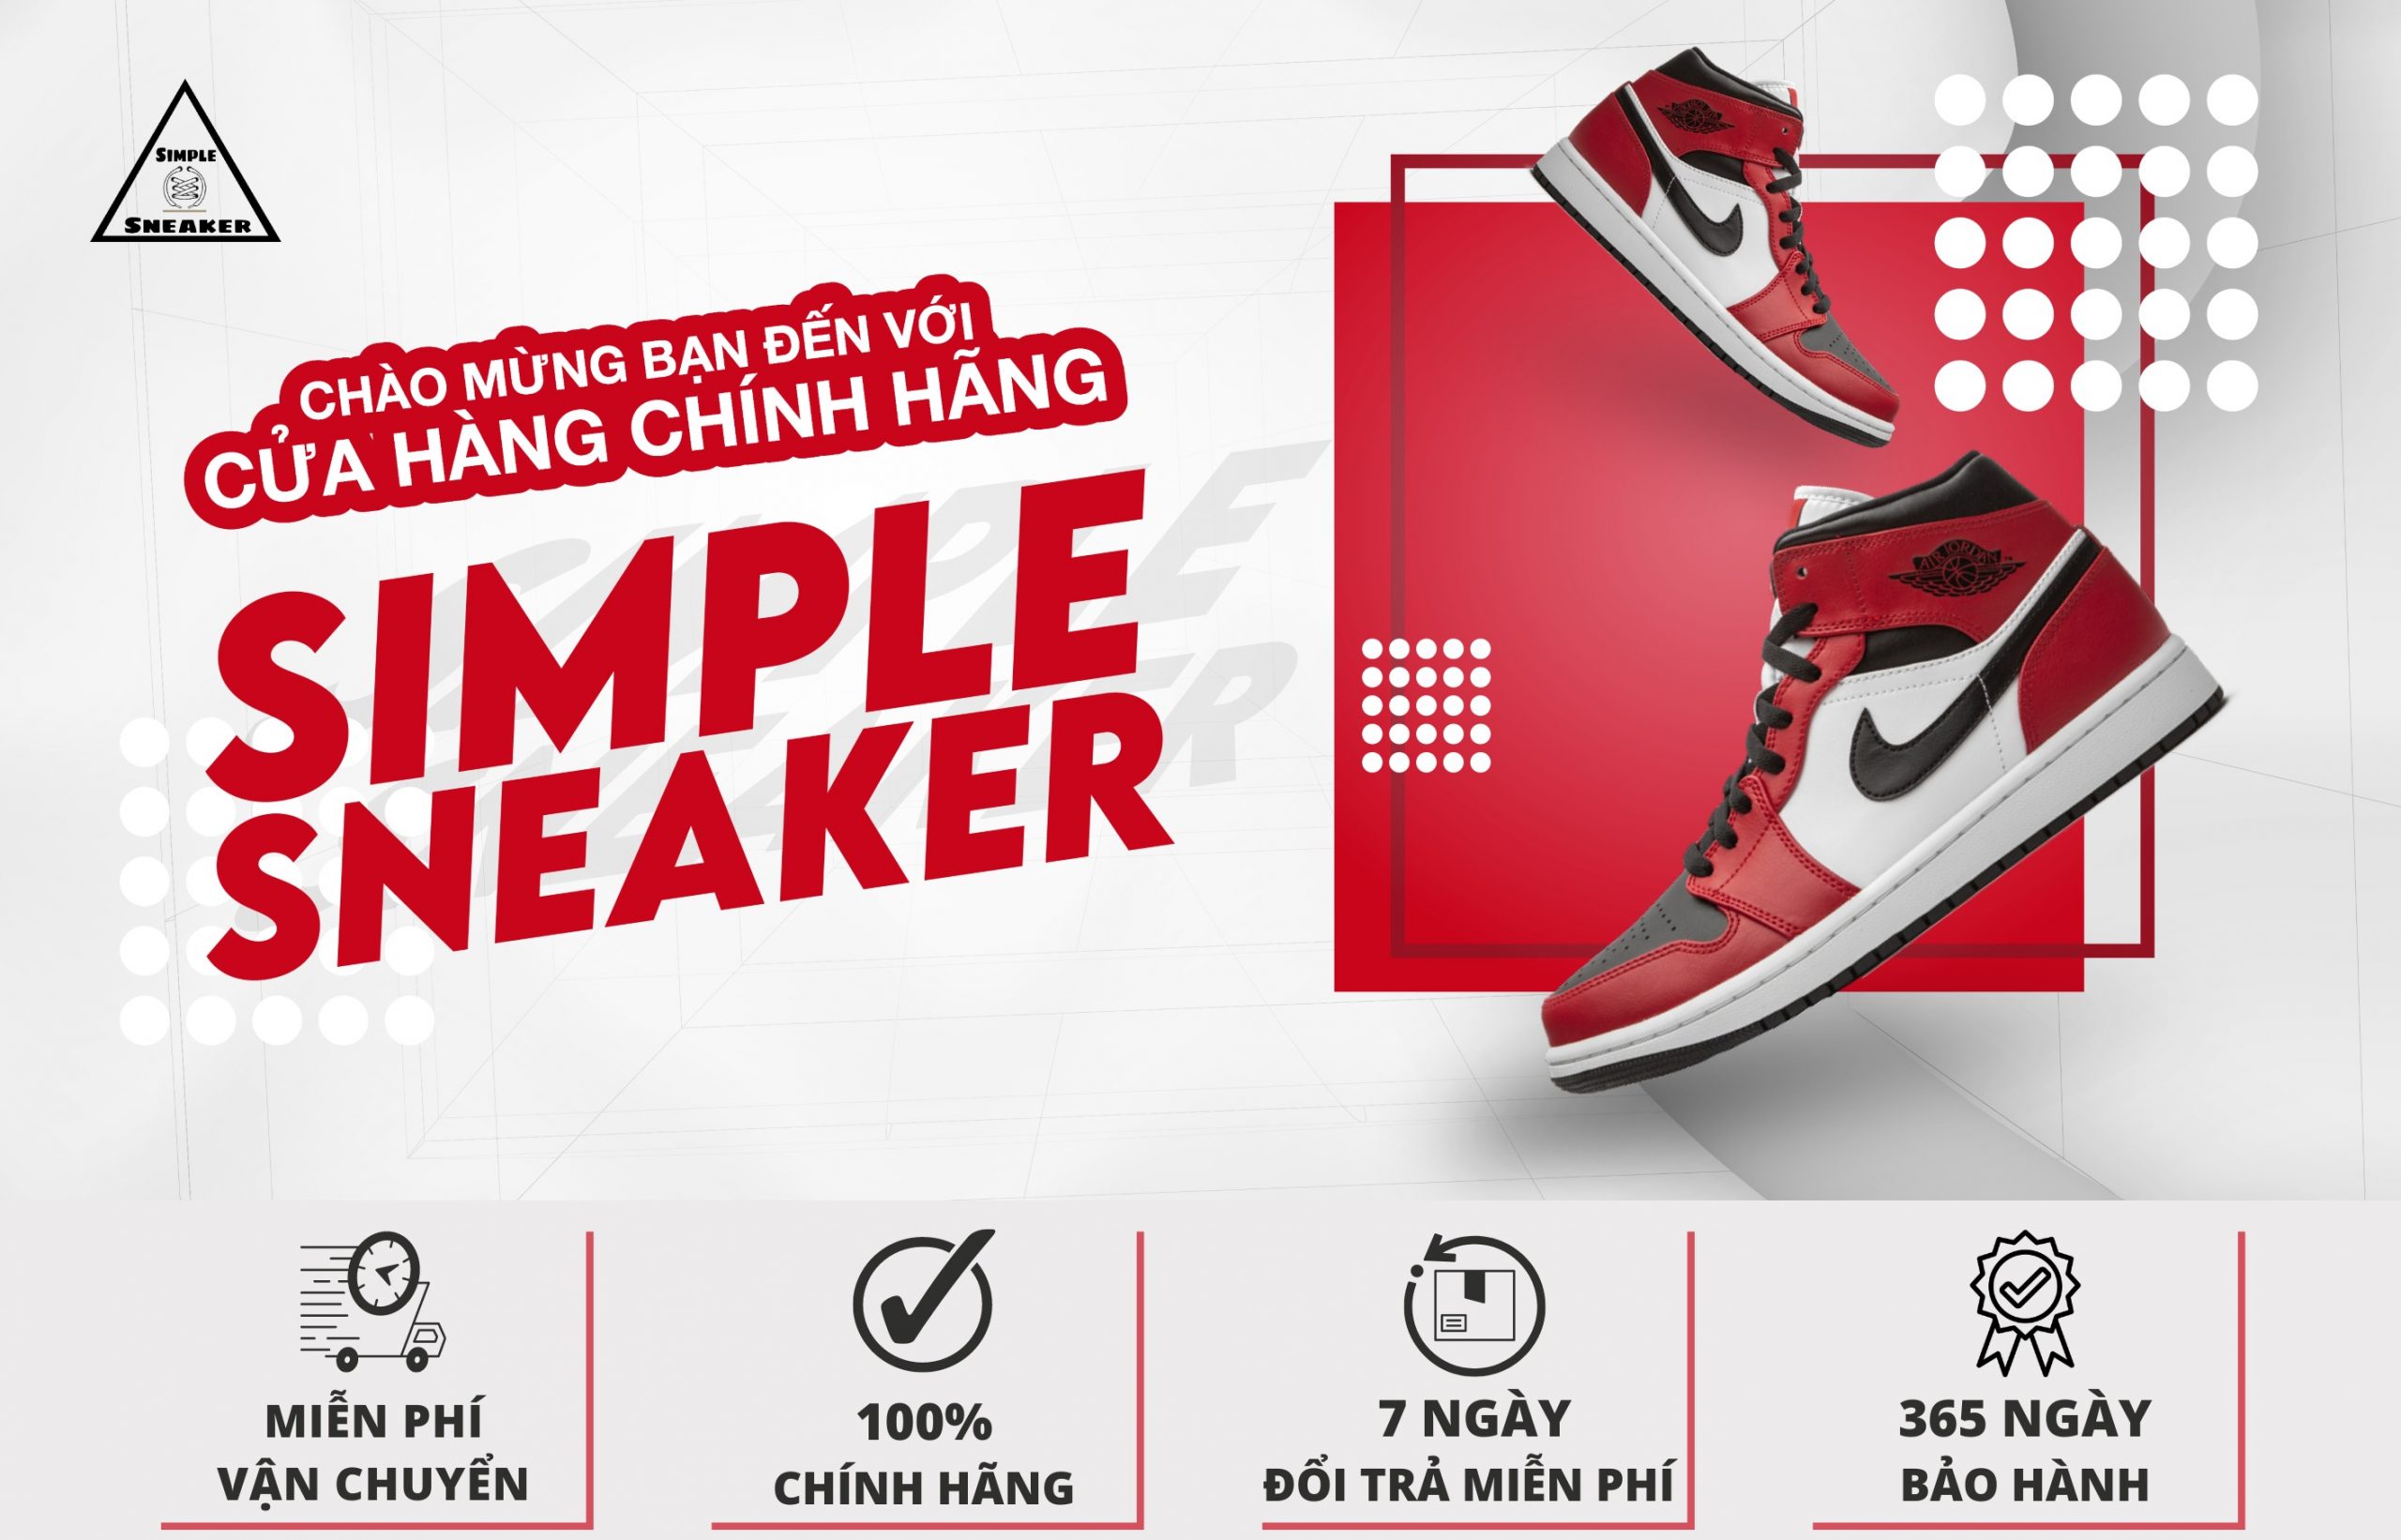 Simple Sneaker Chuyên Cung Cấp Giày Rep 1:1 Có Chất Lượng, Kiểu Dáng, Độ Bền, Độ Êm Ái Giống Giày Chính Hãng Đến 90%.